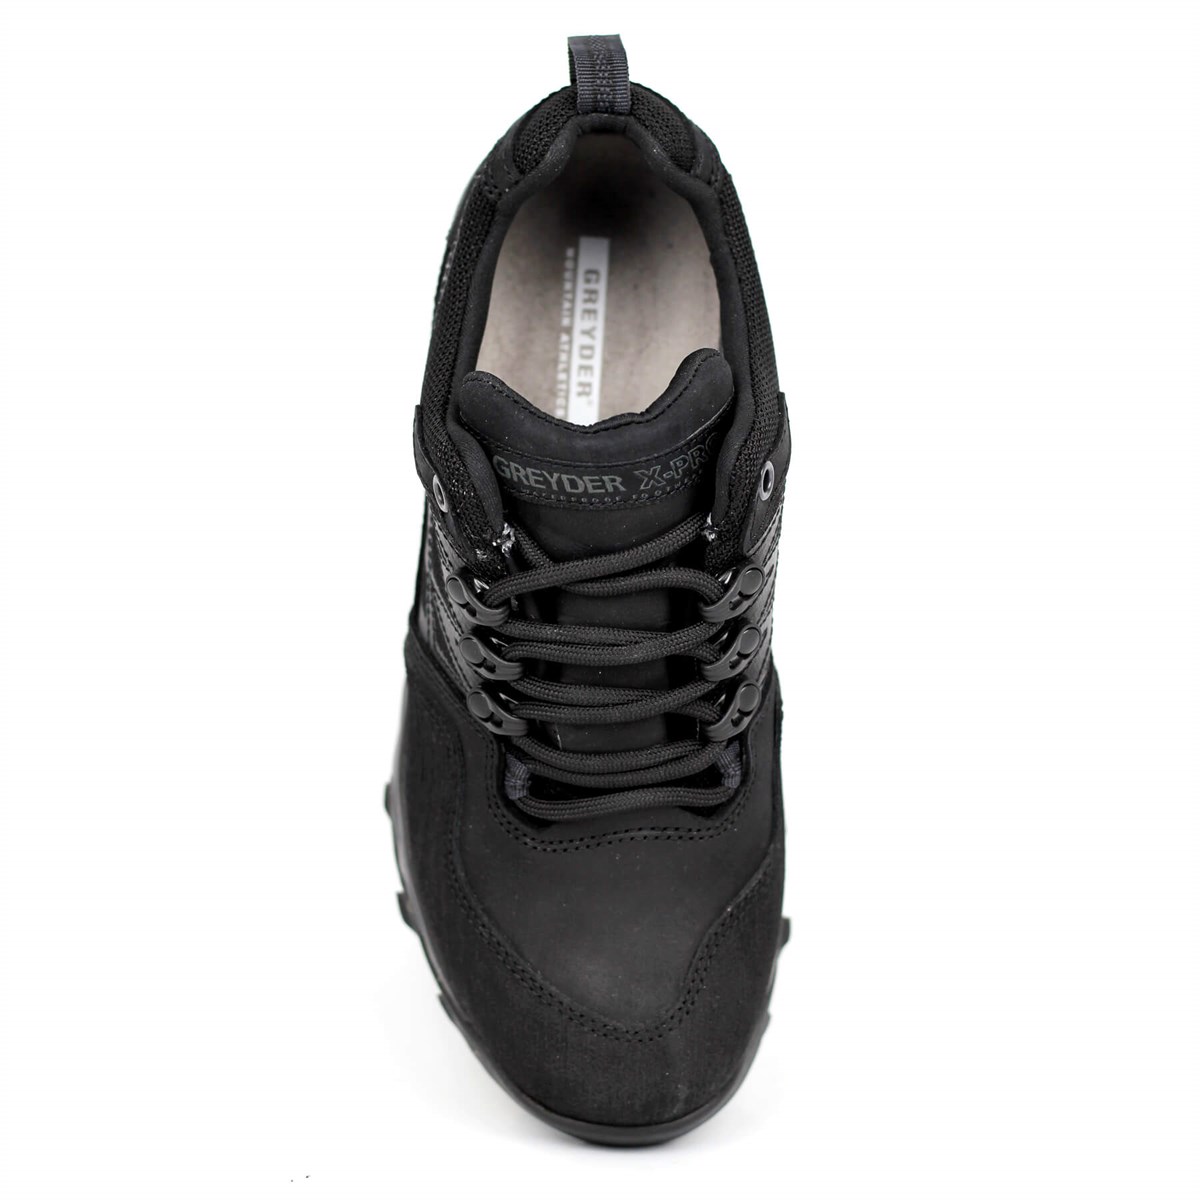 Greyder City Outdoor Kadın Ayakkabı Siyah 10449 0K3GA10449-Siyah 1799,99 TL  Tüm ürünlerde %25 indirim